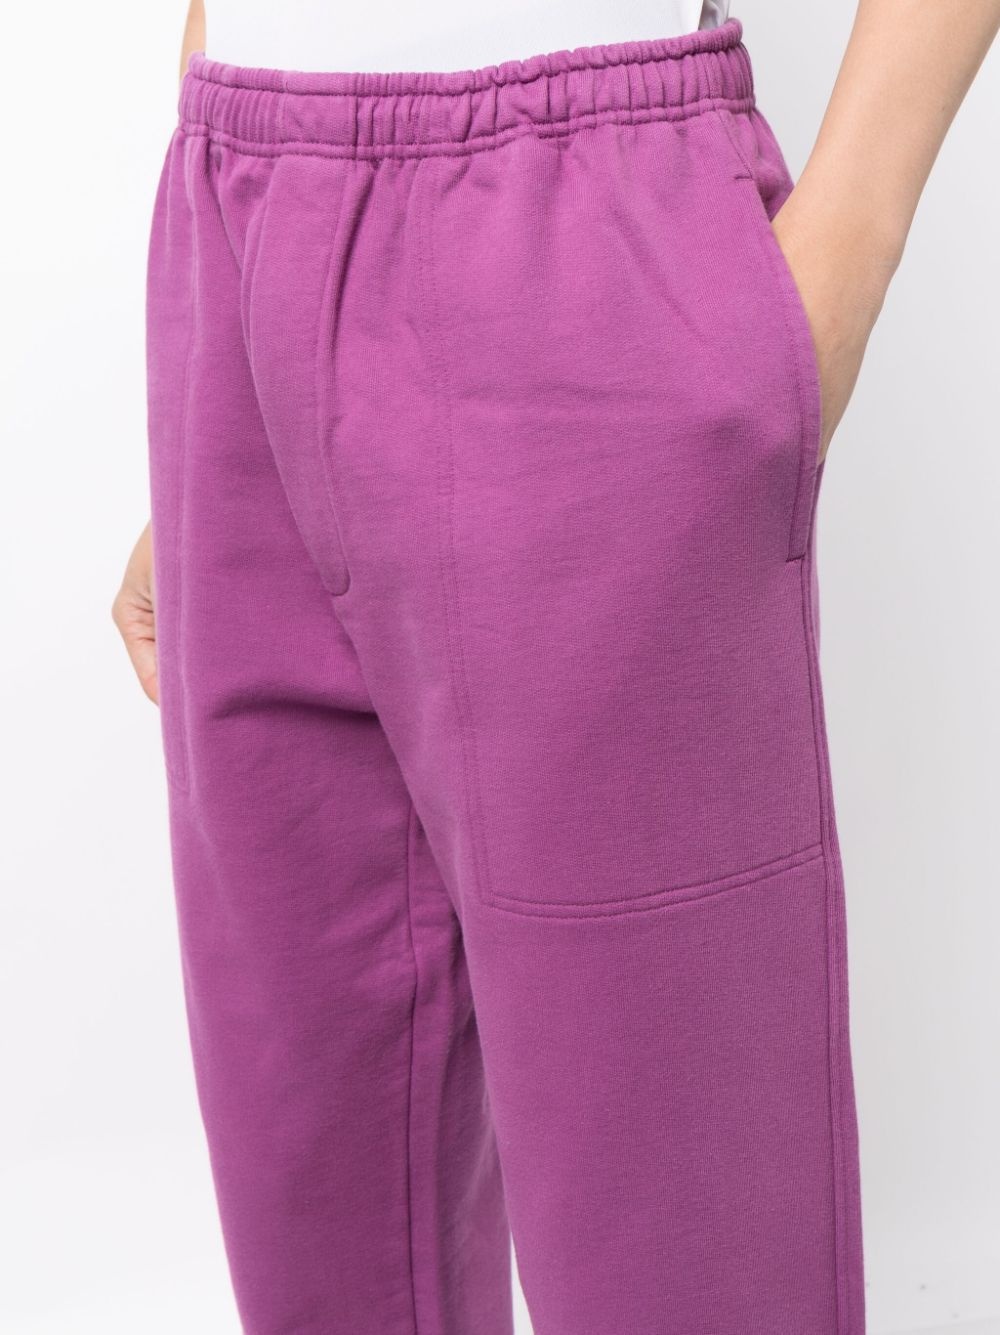 wide-leg cotton track pants - 5